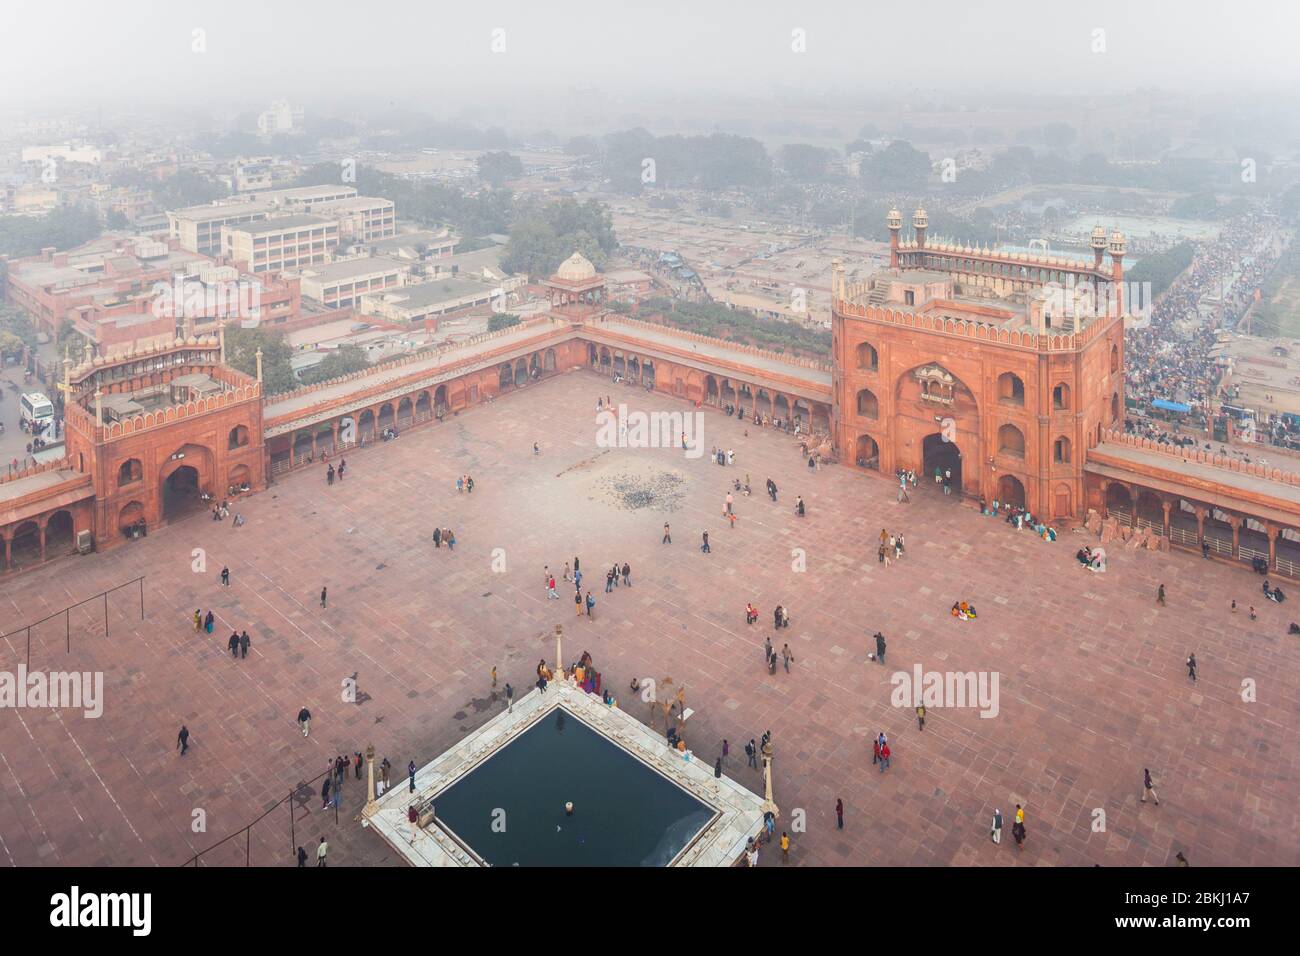 Inde, territoire de la capitale nationale de Delhi, Old Delhi, mosquée Jama Masjid construite par l'empereur moghal Shah Jahan en 1656, vue en hauteur sur l'esplanade, le bassin et la ville depuis un minaret Banque D'Images